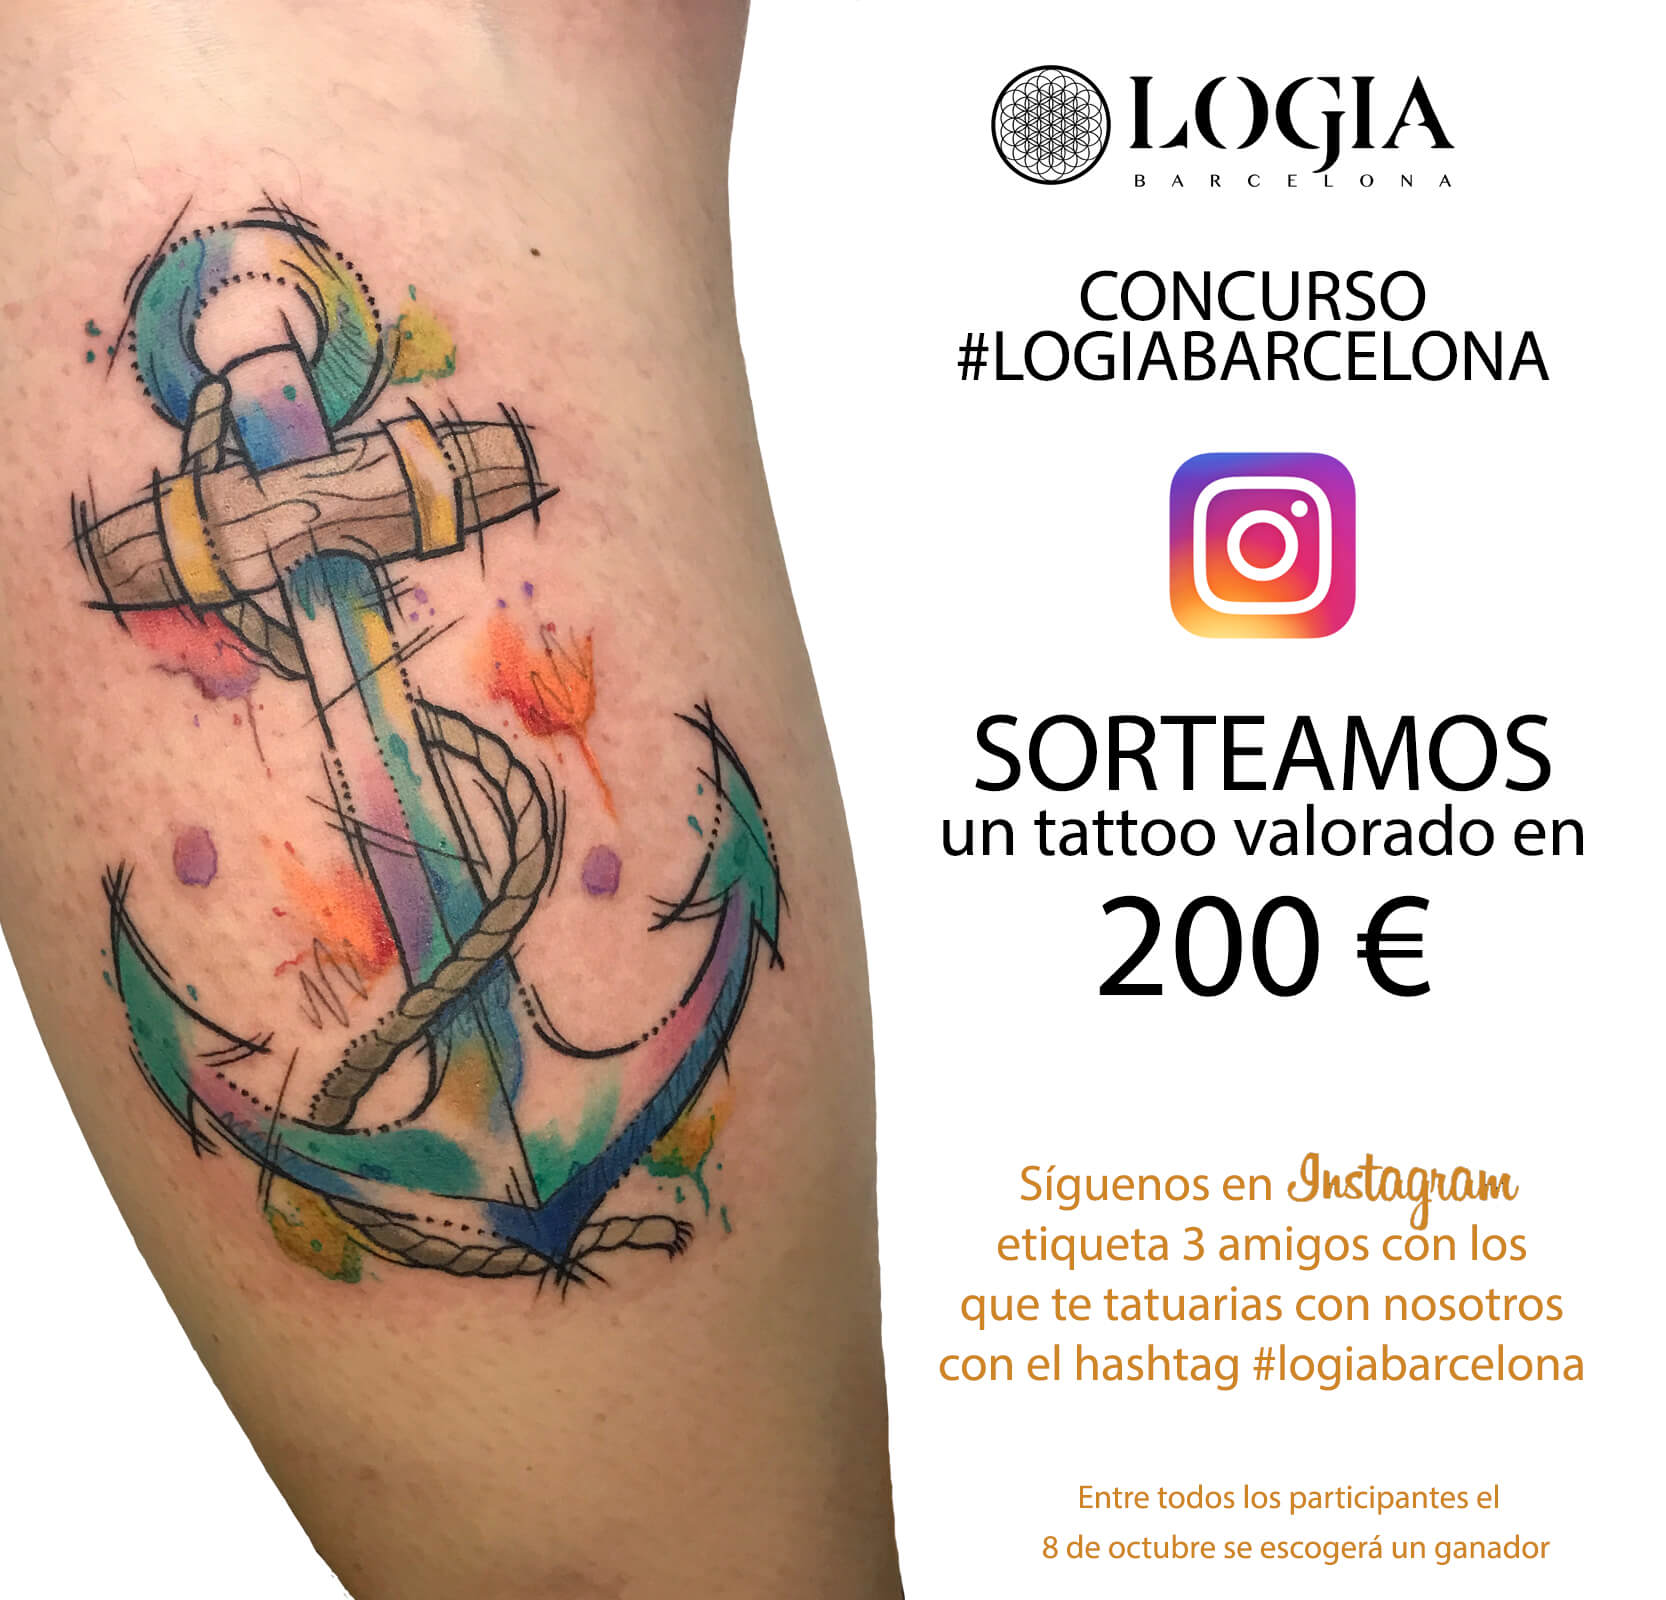 ¡Concurso Logia Barcelona! Sorteamos un tatuaje en Instagram